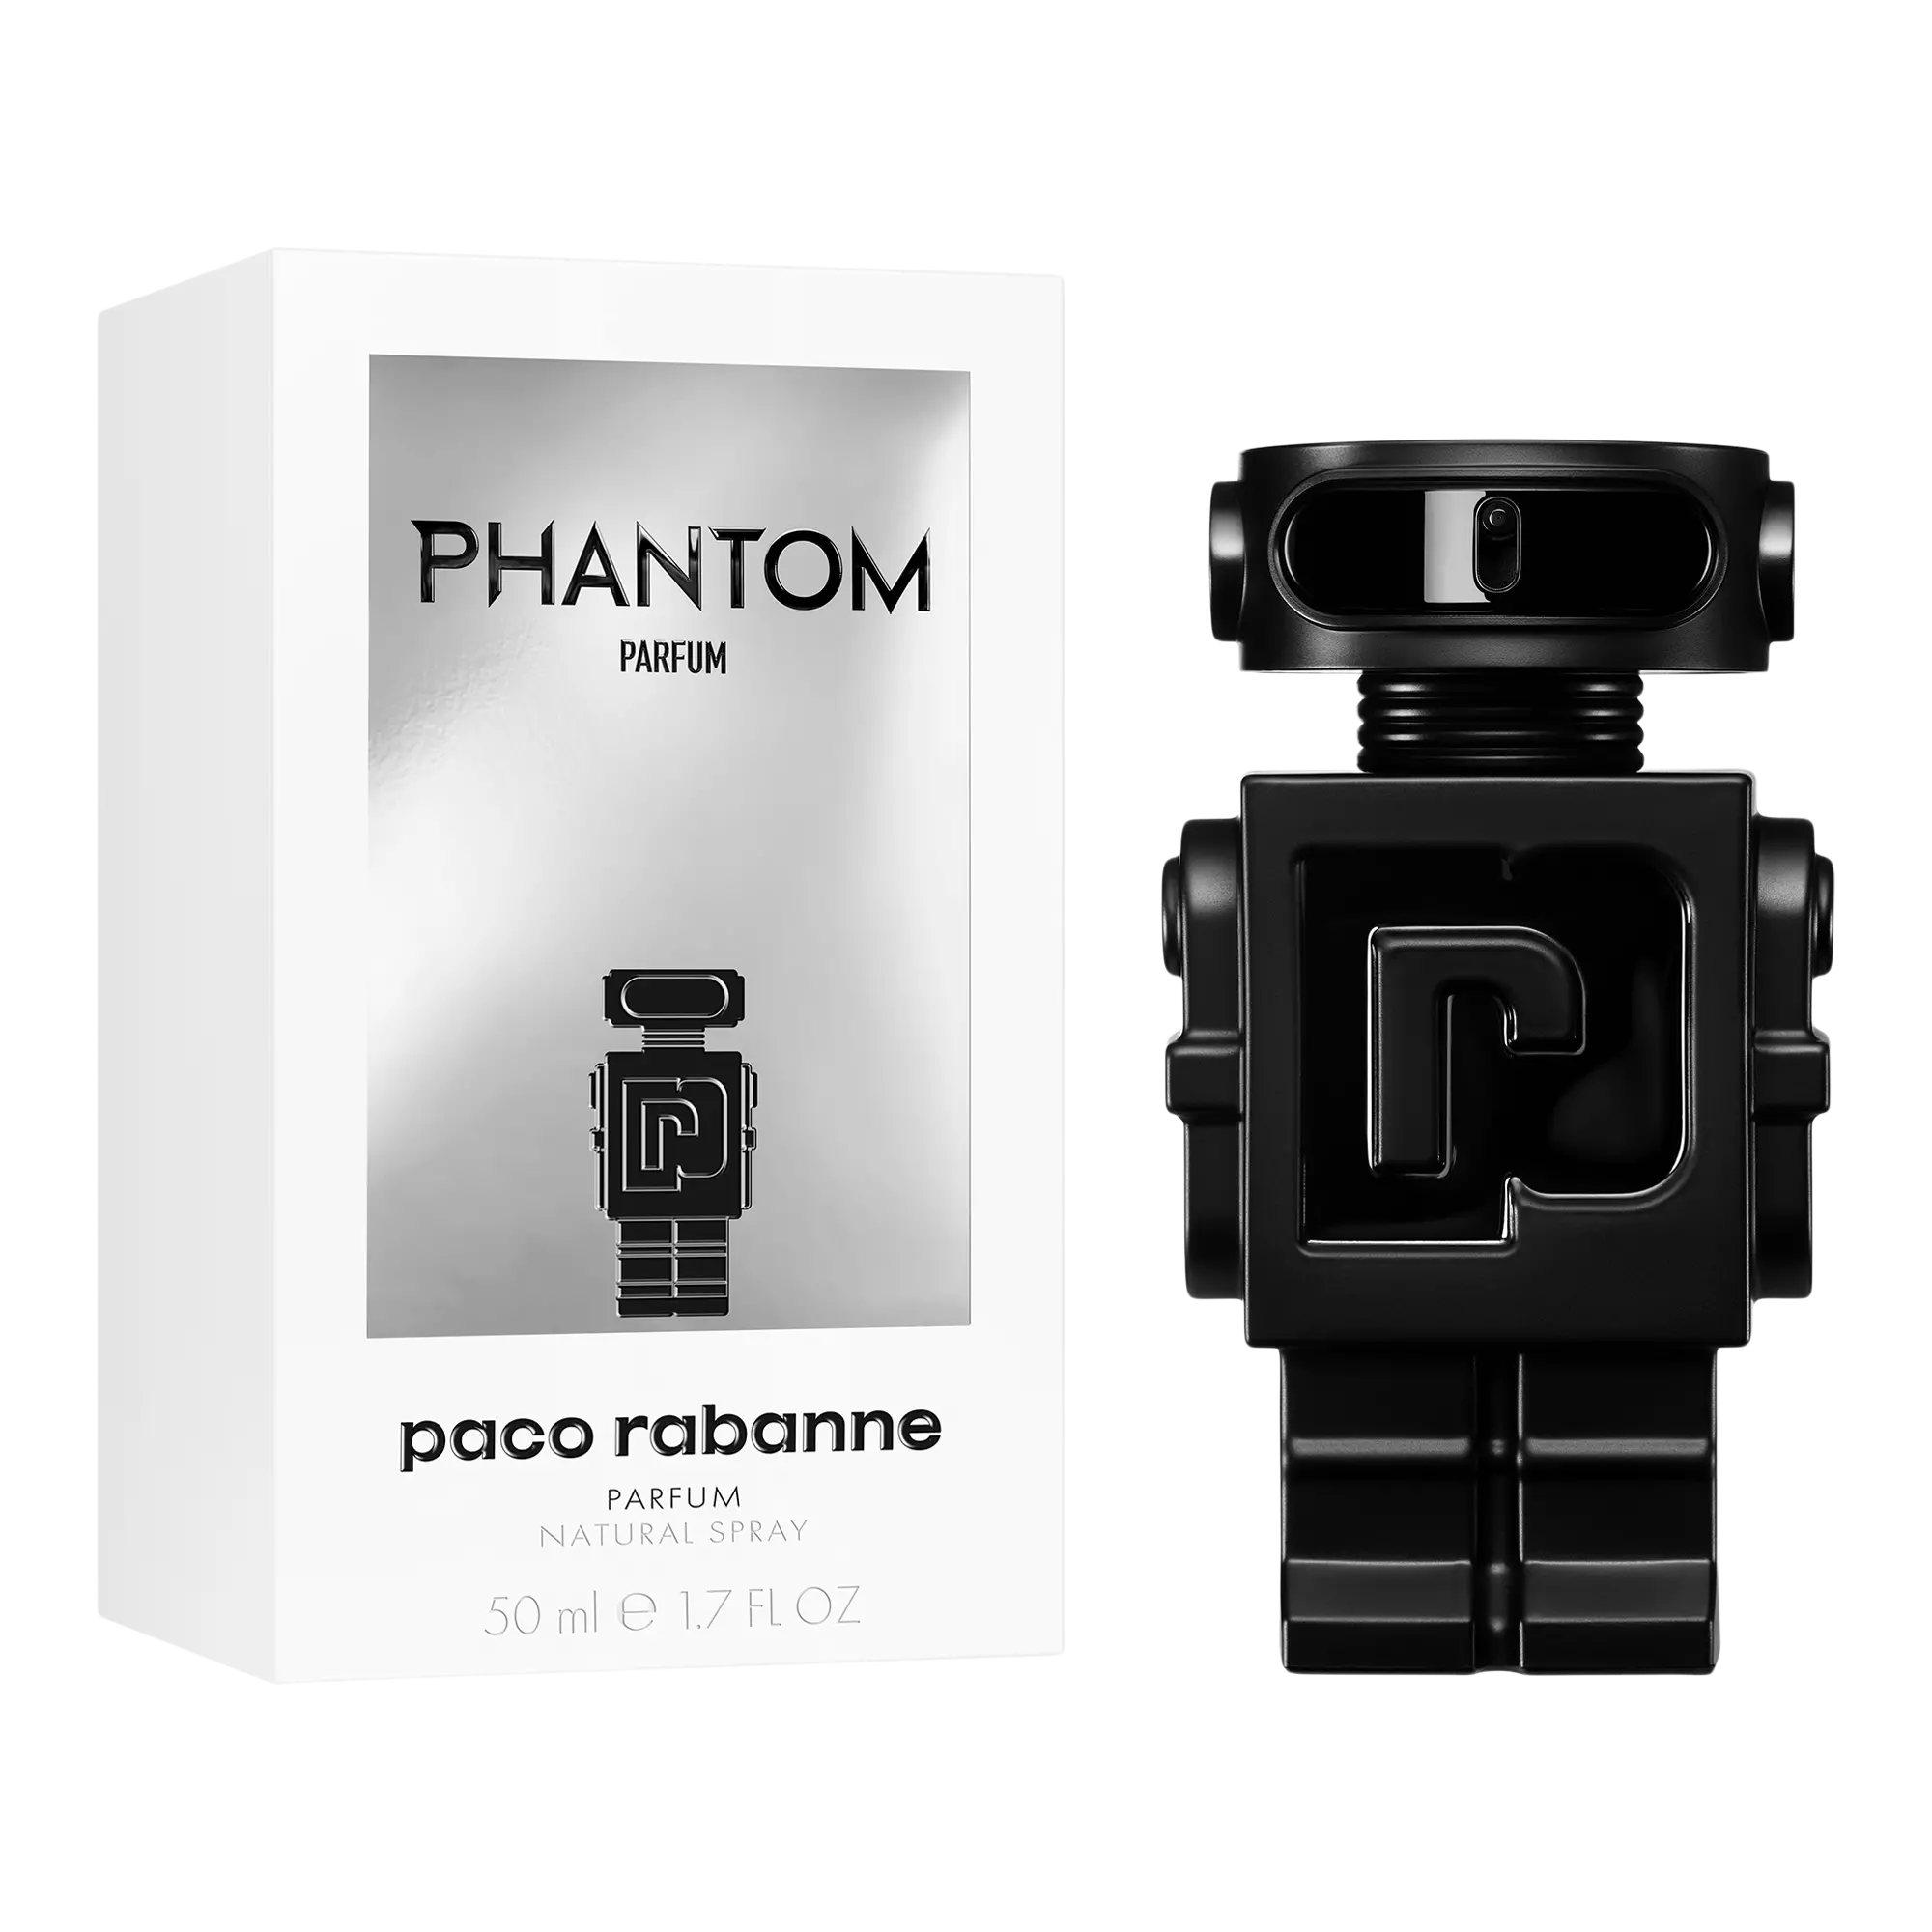 Perfume Paco Rabanne Phantom Parfum (M) / 50 ml - 3349668614585- Prive Perfumes Honduras